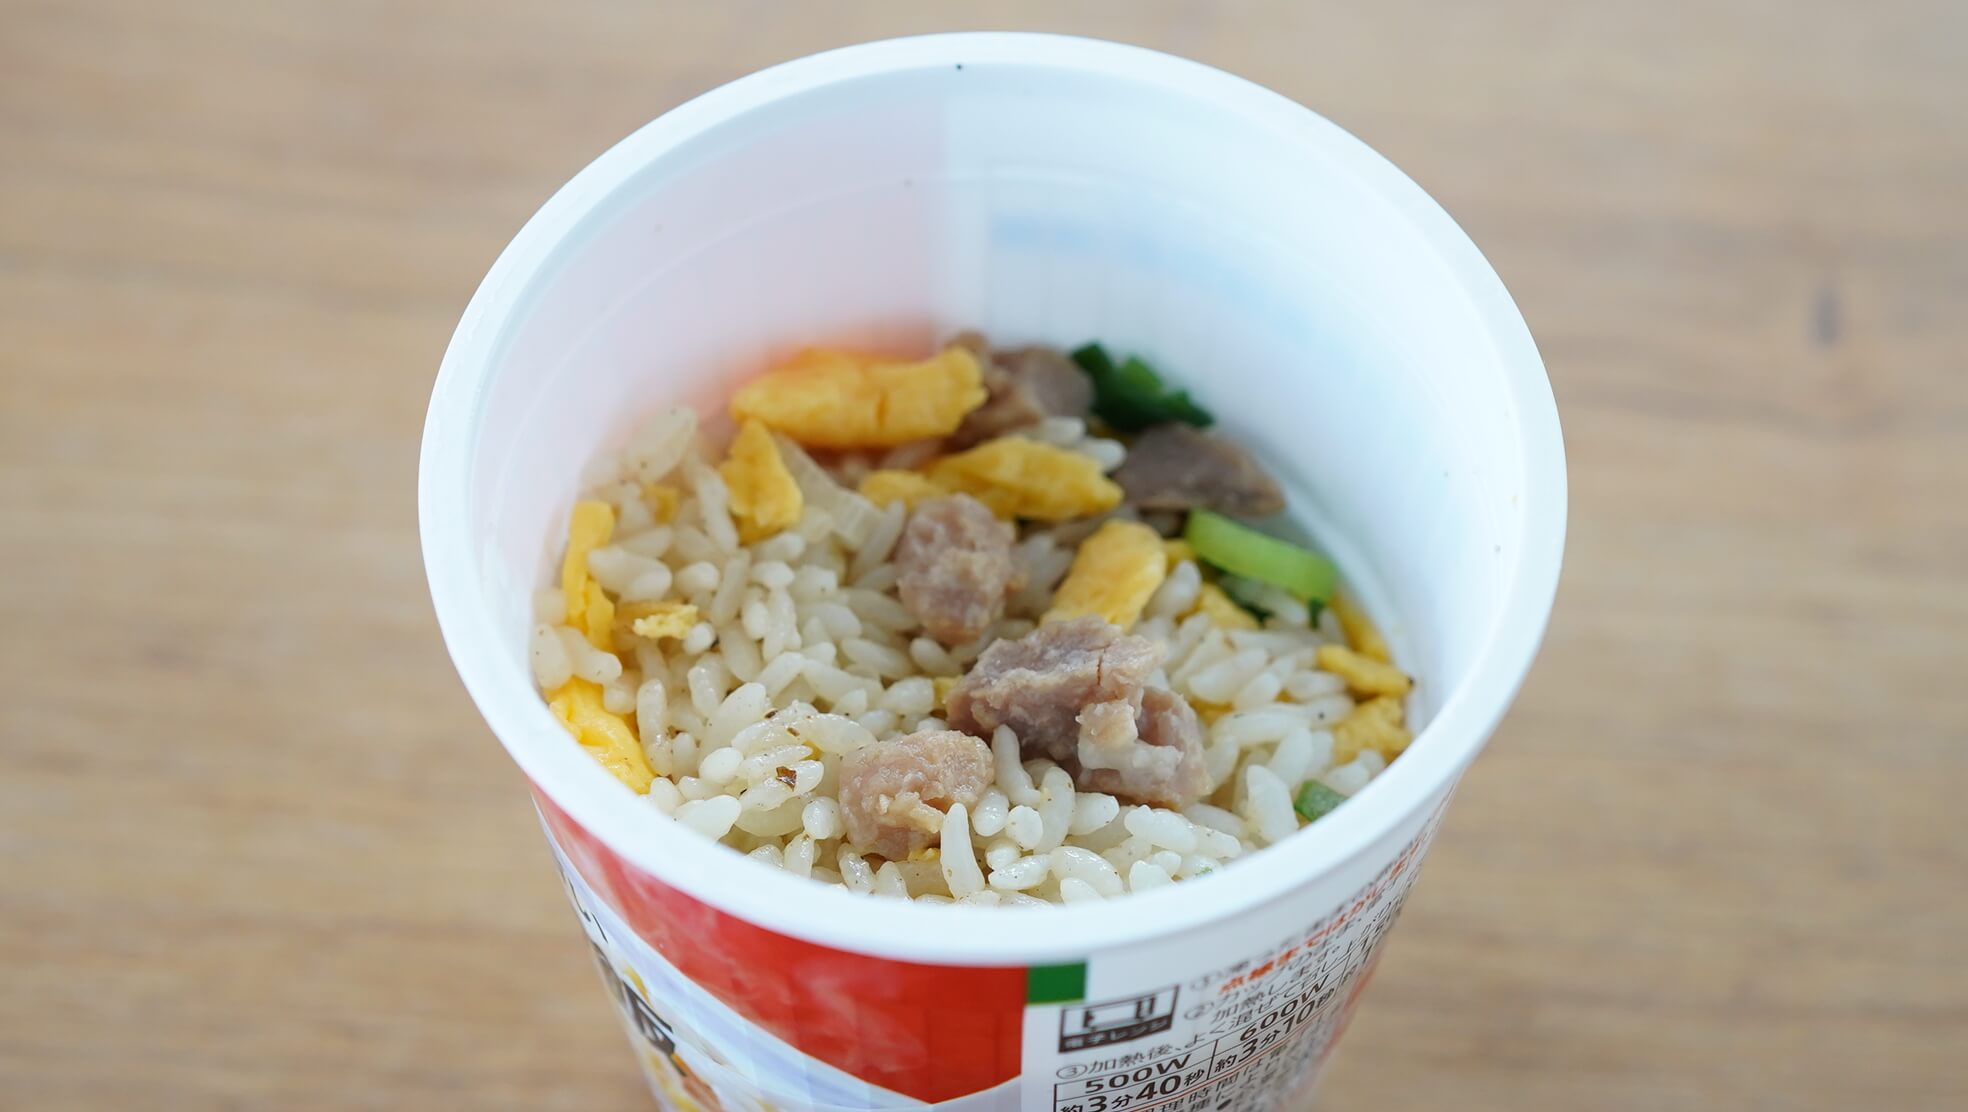 セブンイレブンのカップ型冷凍食品「シンプルで美味しい炒飯」のフタを開けて上から撮影した写真